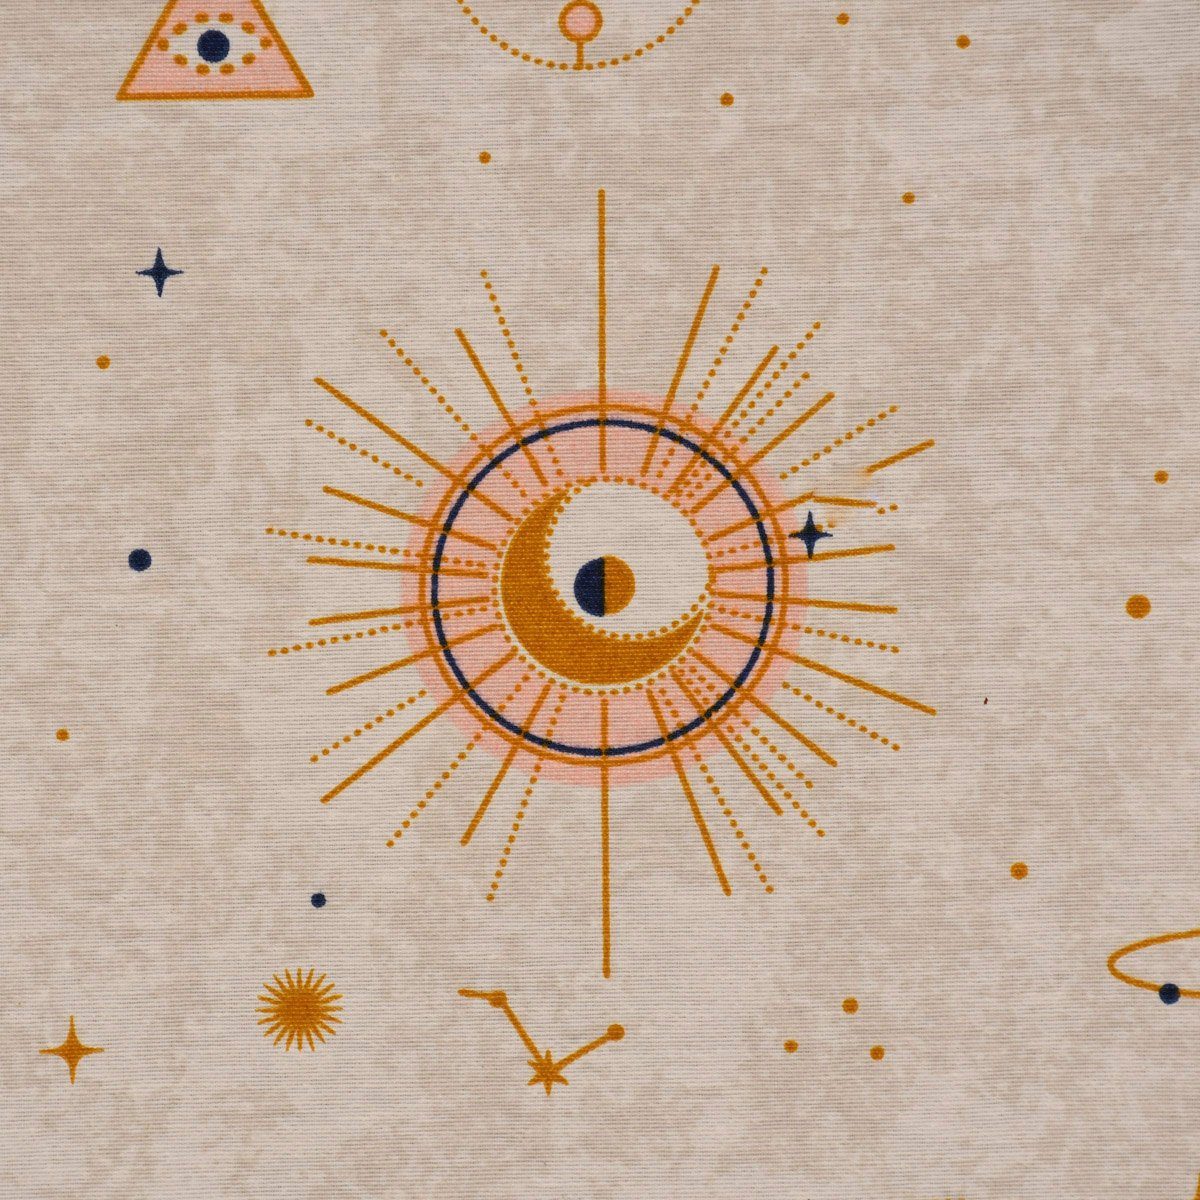 gold Astronomie Tischdecke handmade Sonne SCHÖNER LEBEN. Planeten Tischdecke pastell, LEBEN. SCHÖNER natur